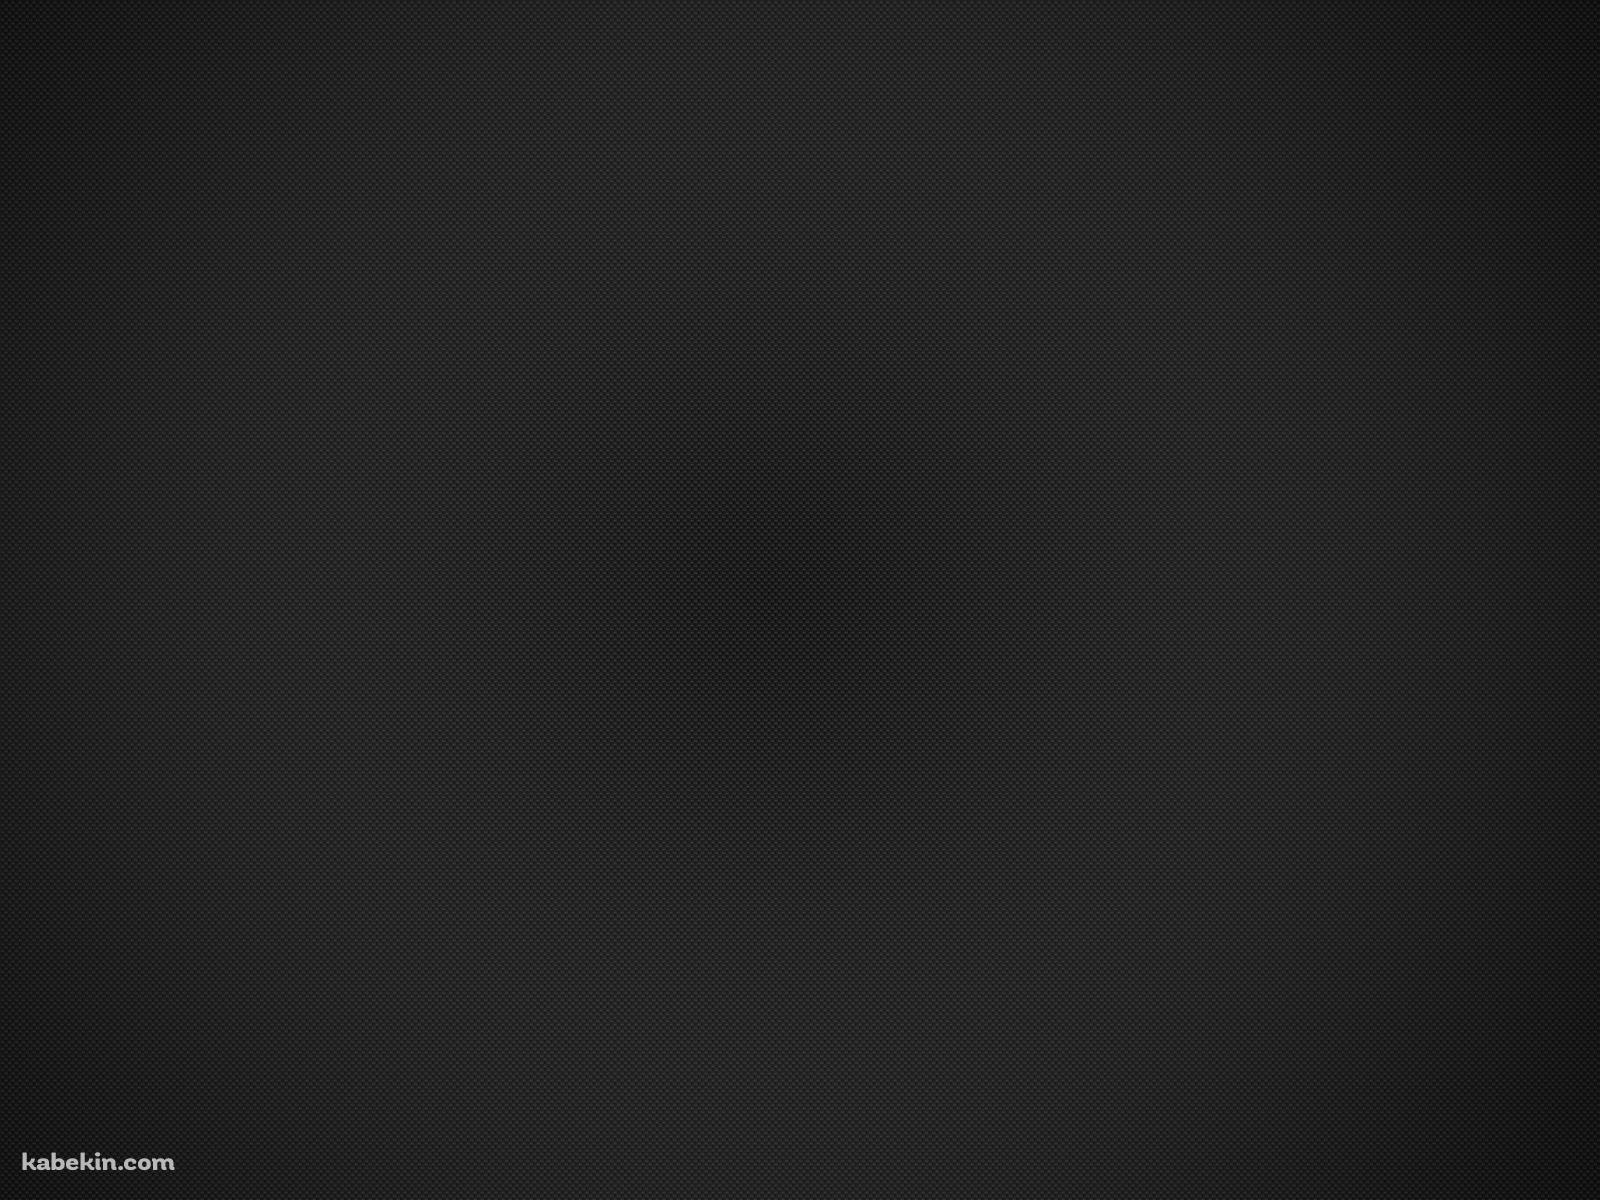 シンプルな黒のドットの集合体の壁紙(1600px x 1200px) 高画質 PC・デスクトップ用